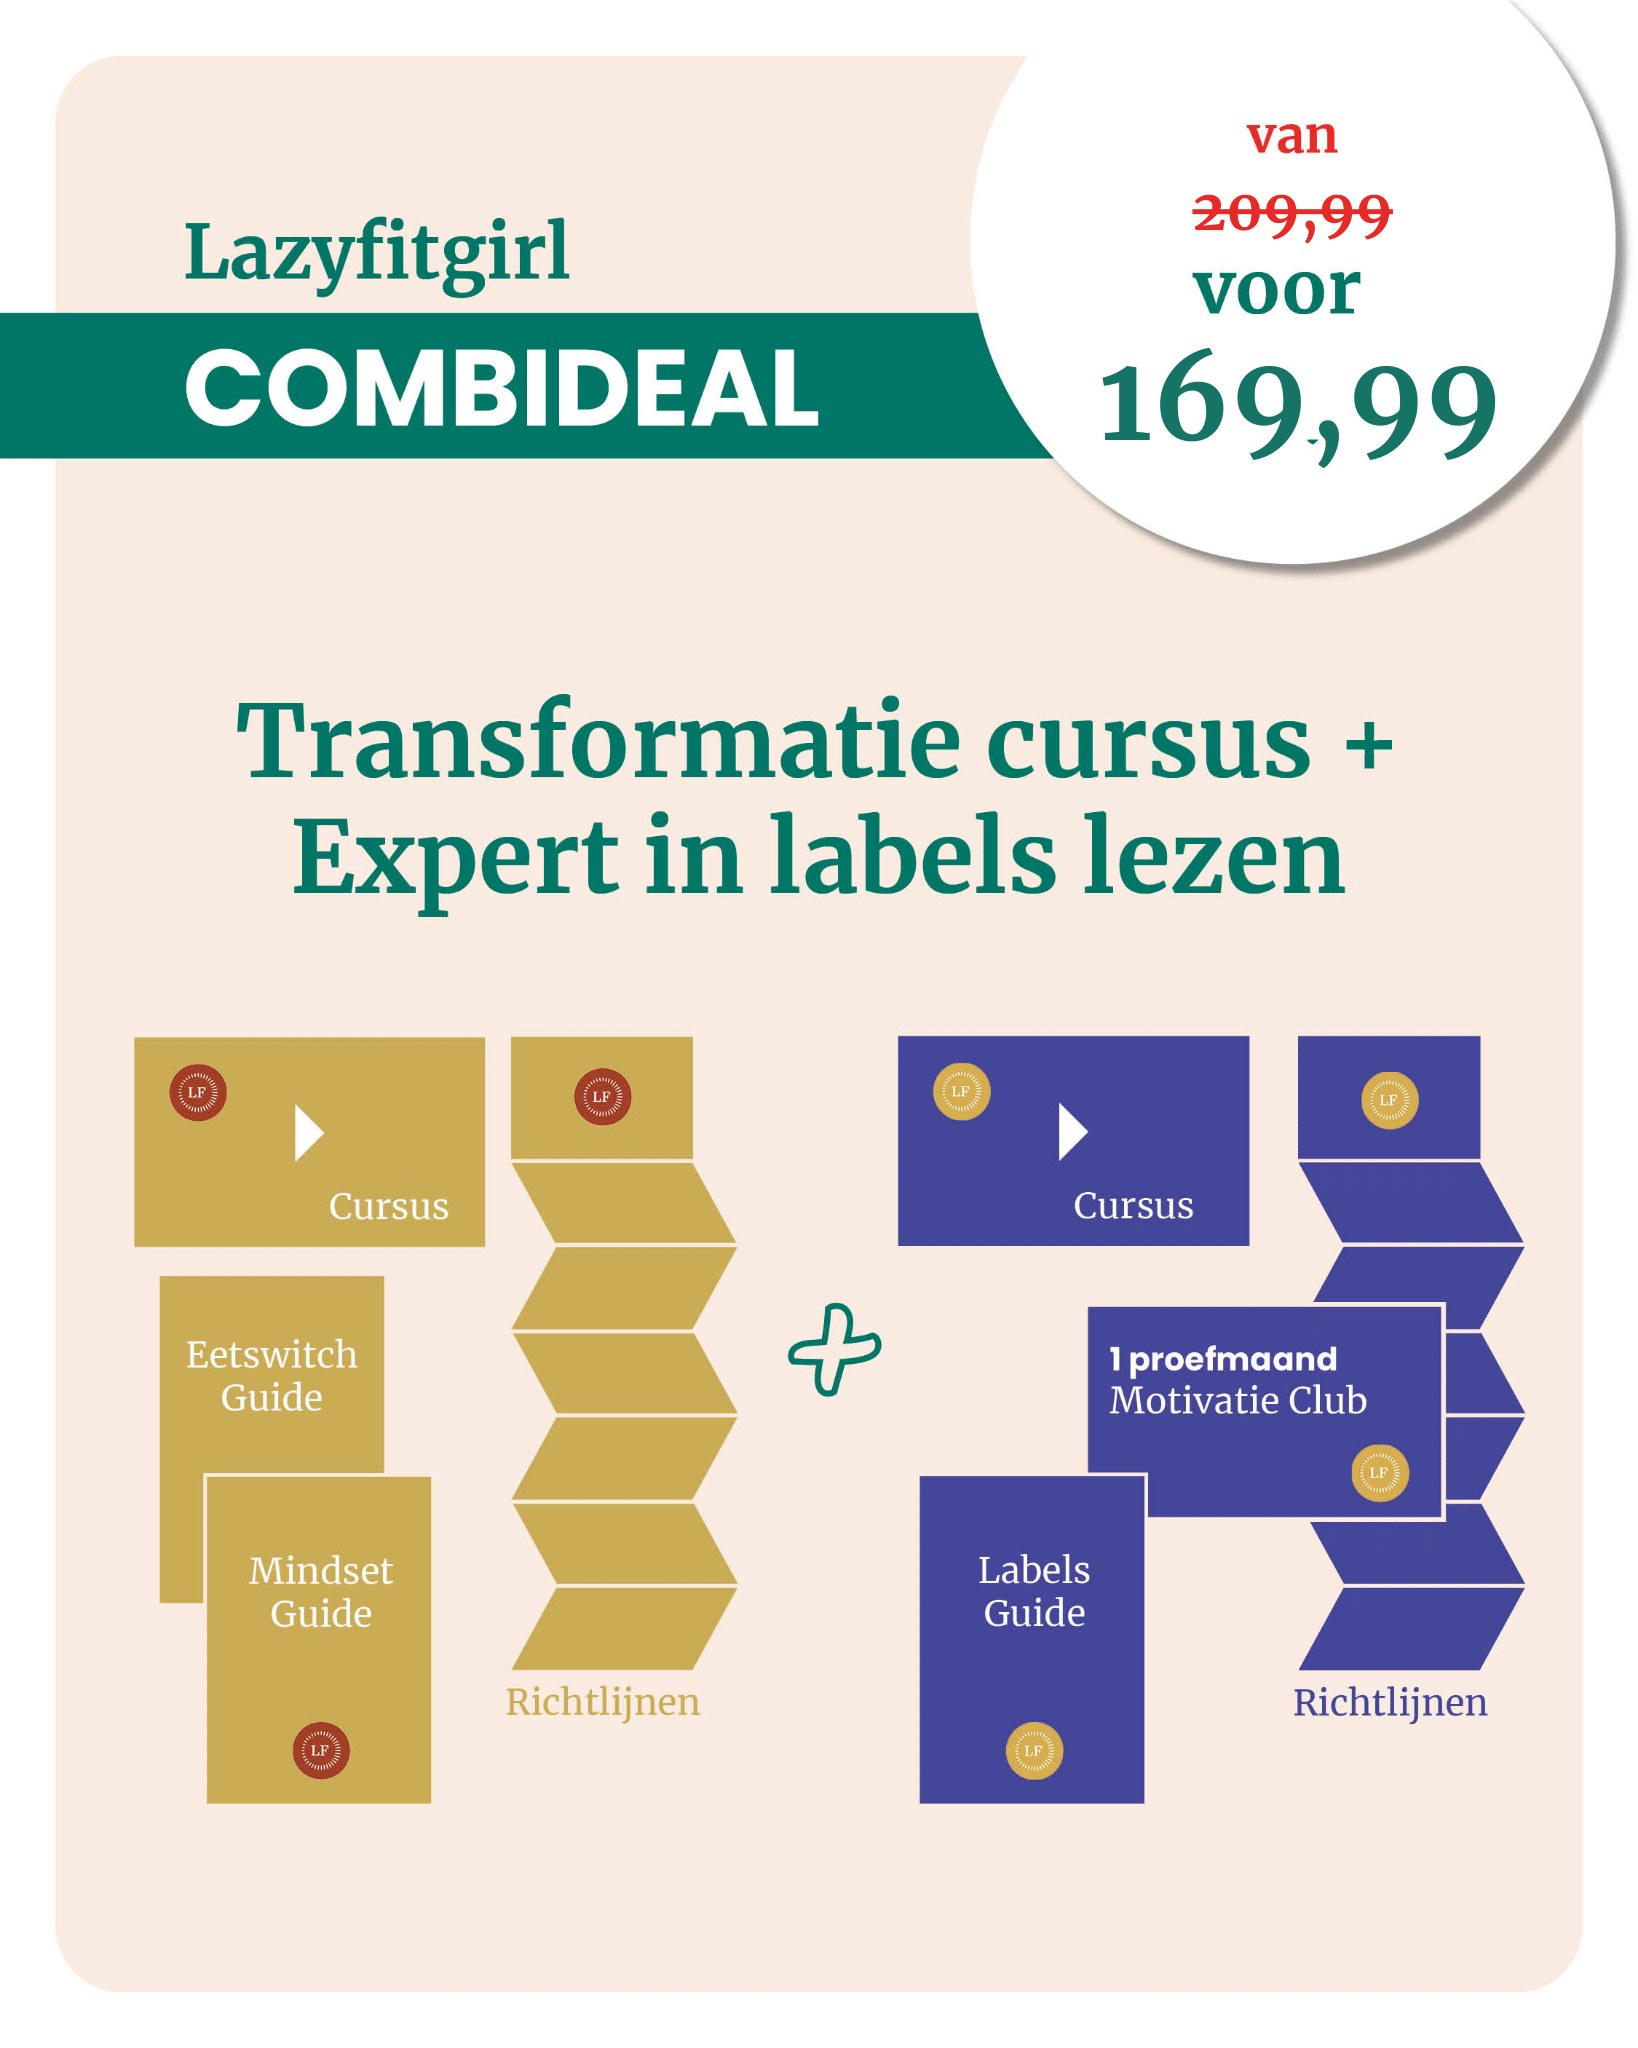 Combi Transformatie Cursus & Expert in labels lezen met 30 euro korting